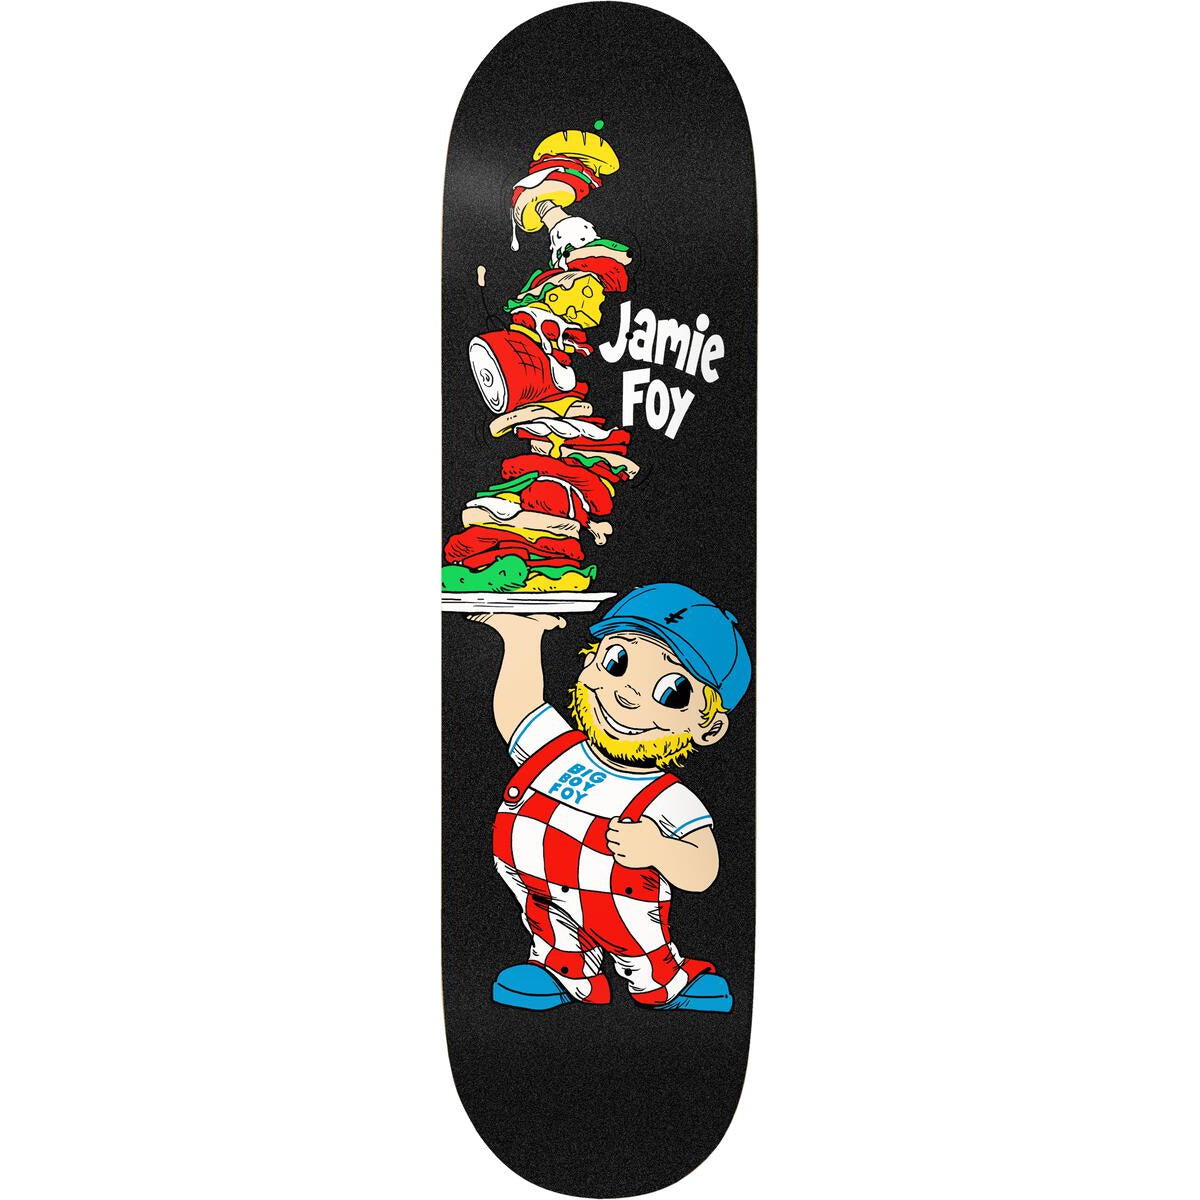 Big Boy Foy Jamie Foy Black Deathwish Skateboard Deck